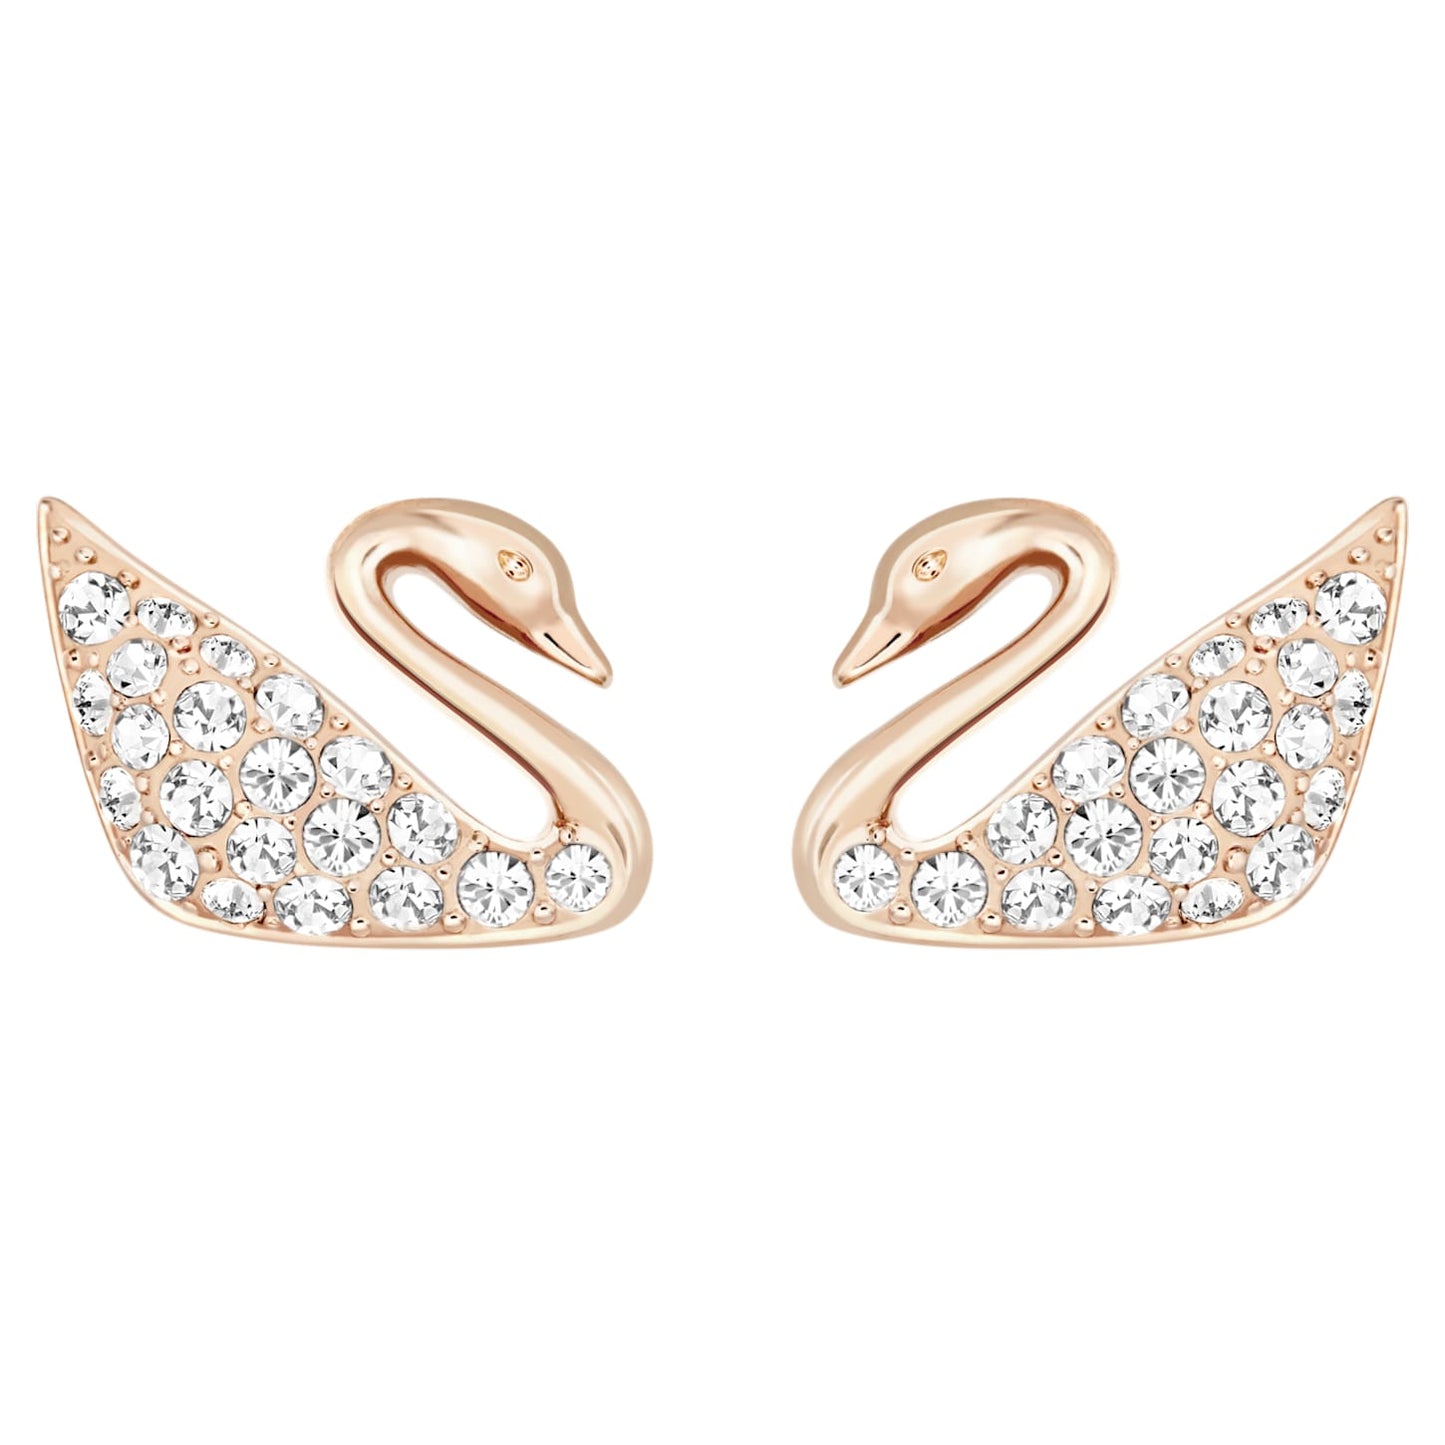 Bông tai thiên nga vàng hồng Swarovski - Swan Pierced Earrings White Rose Gold - 1